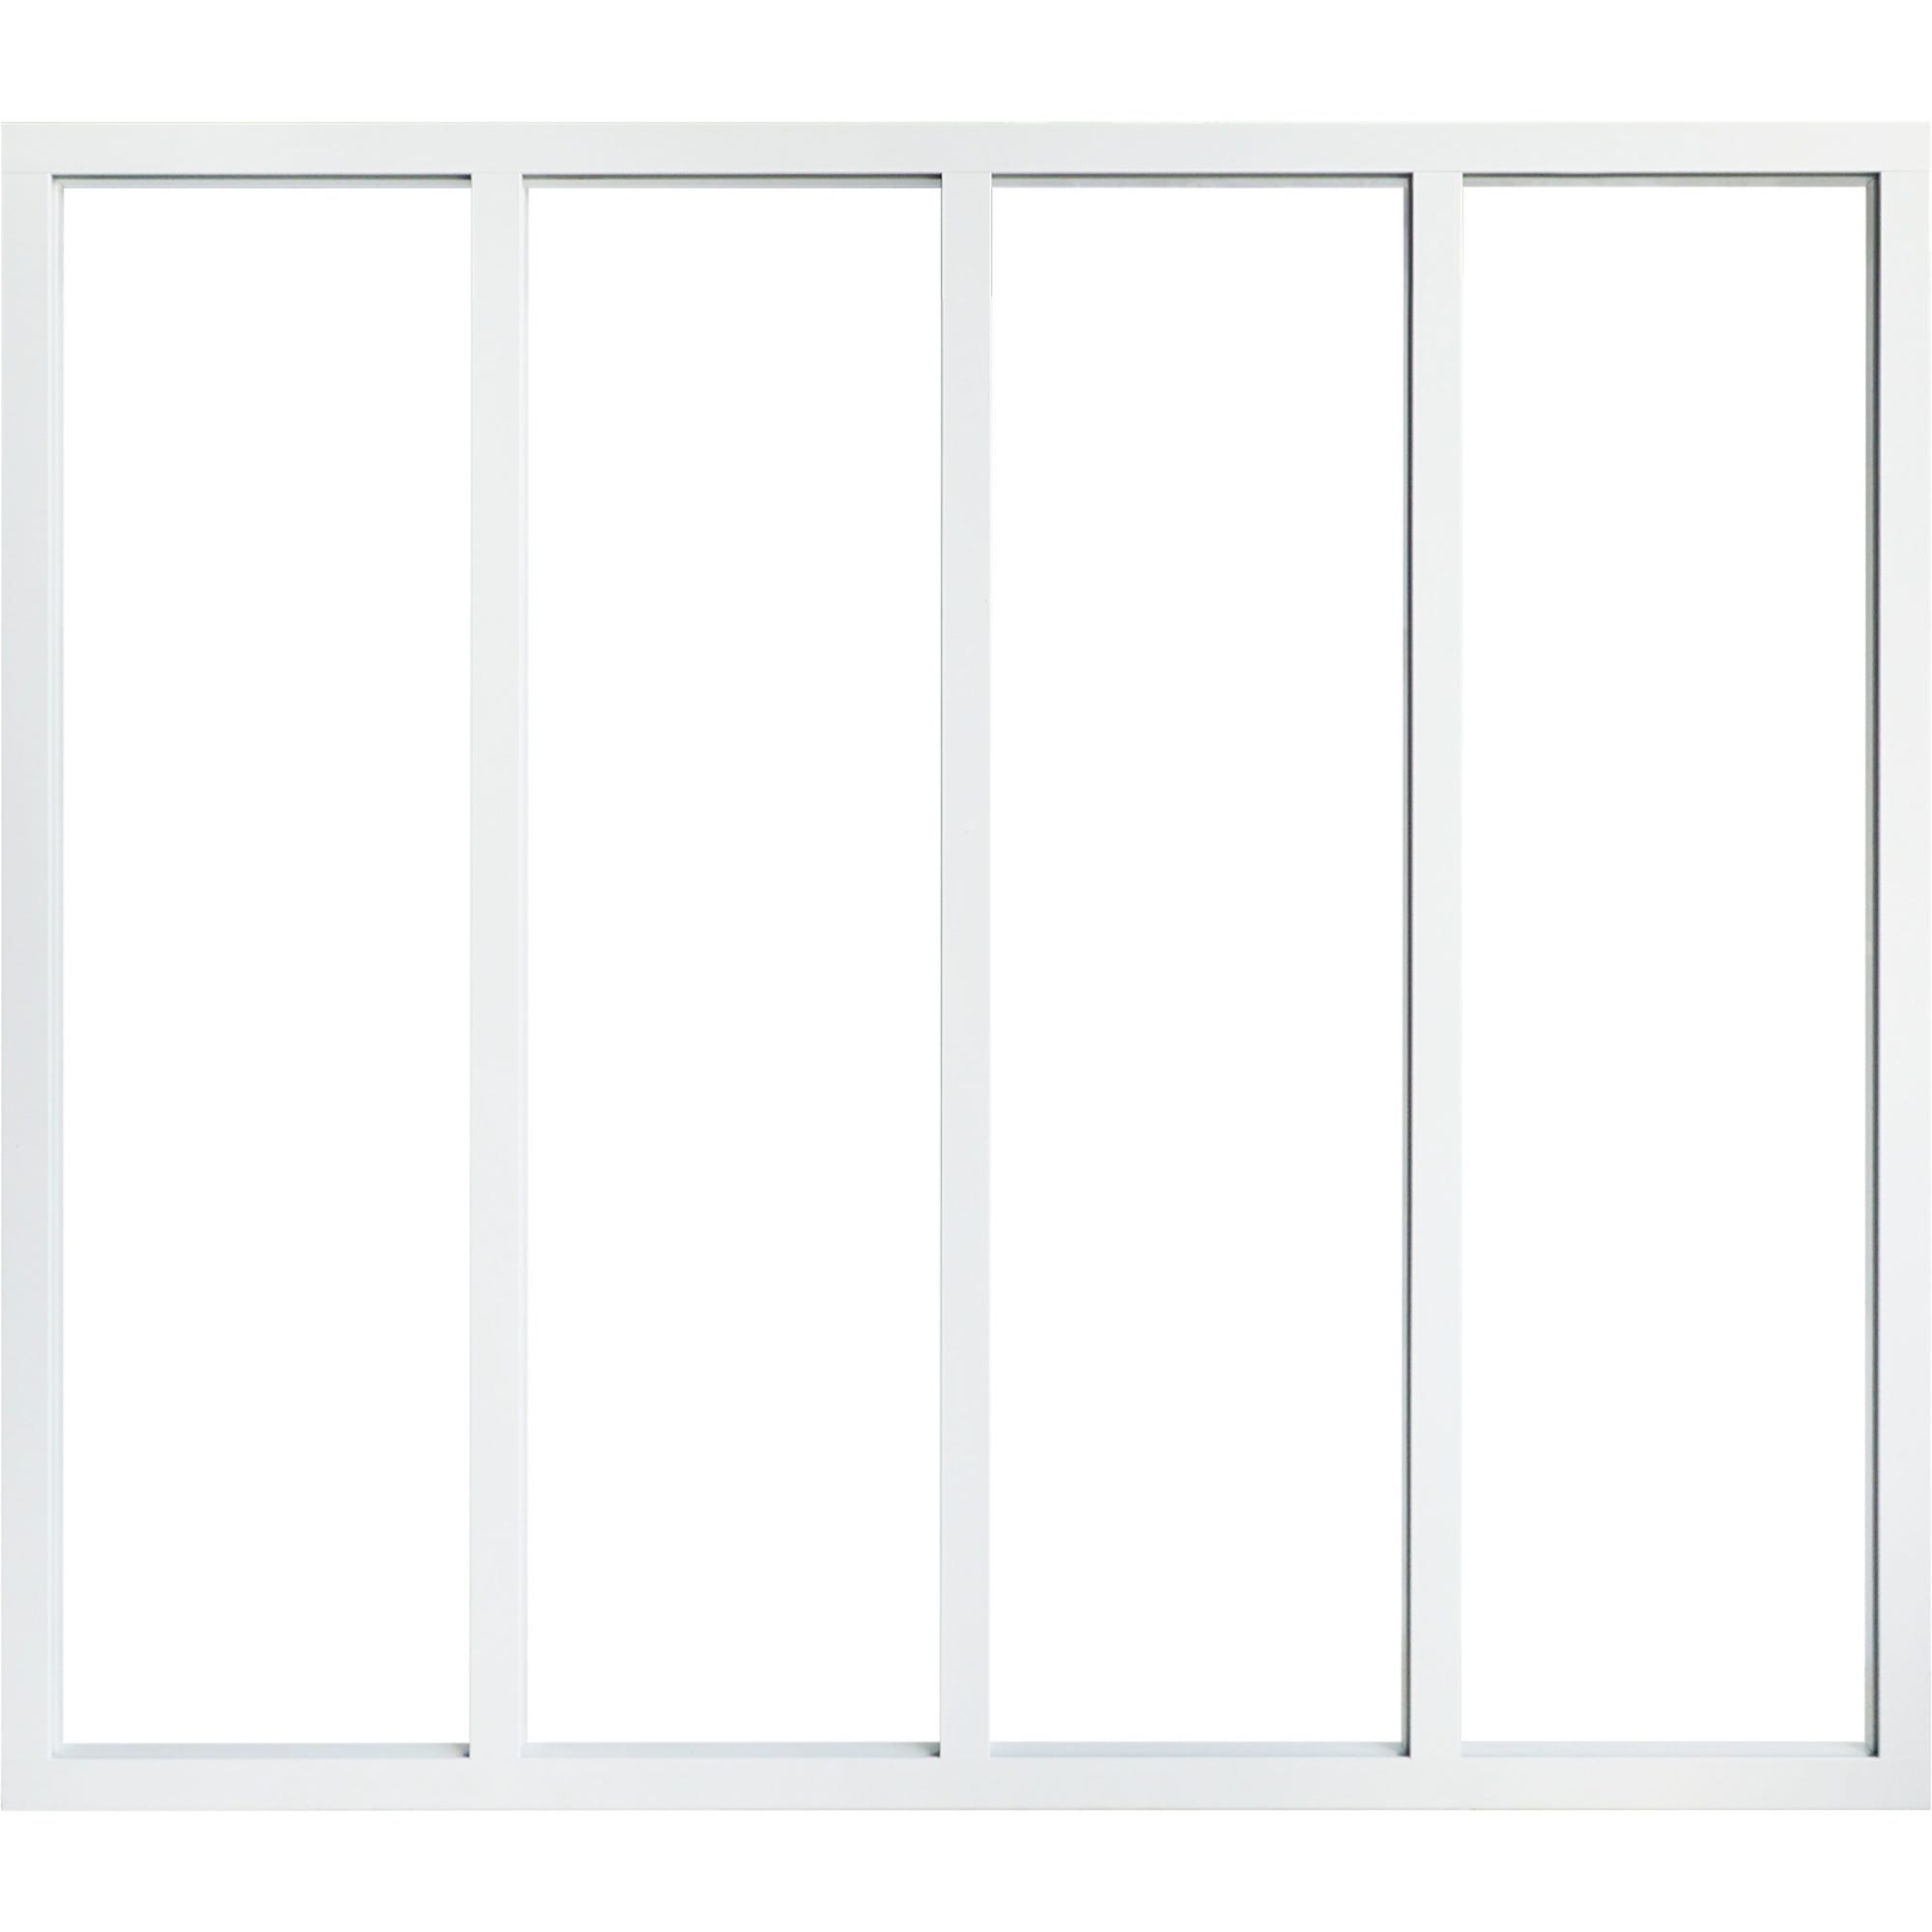 Kit verrière aluminium 4 vitrages clairs inclus hauteur 1080 mm blanc sablé 0